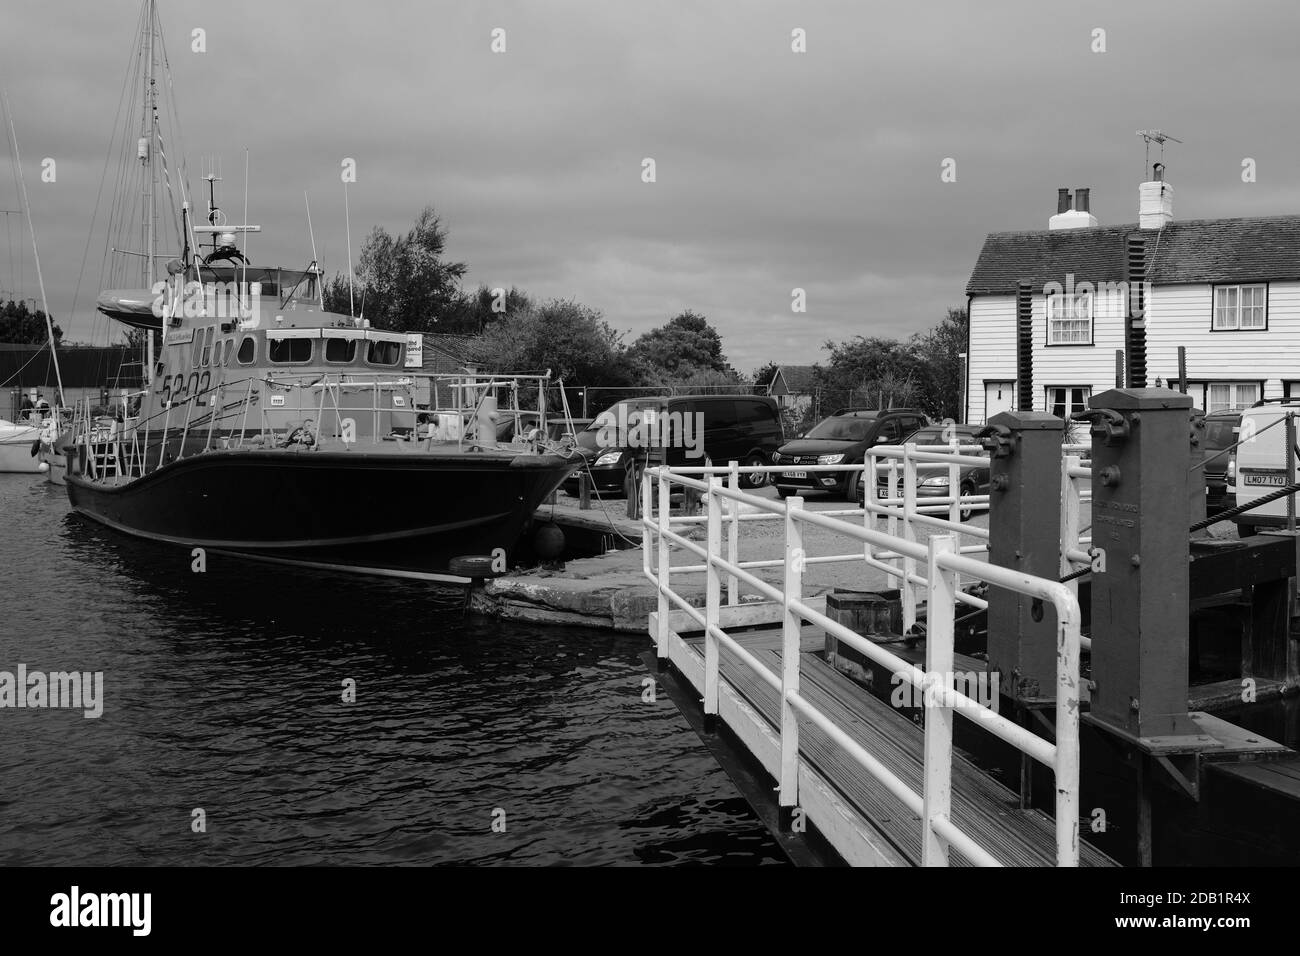 Un canot de sauvetage à la retraite amarré à Heybridge Essex UK avec des bâtiments d'époque en arrière-plan en noir et blanc Banque D'Images